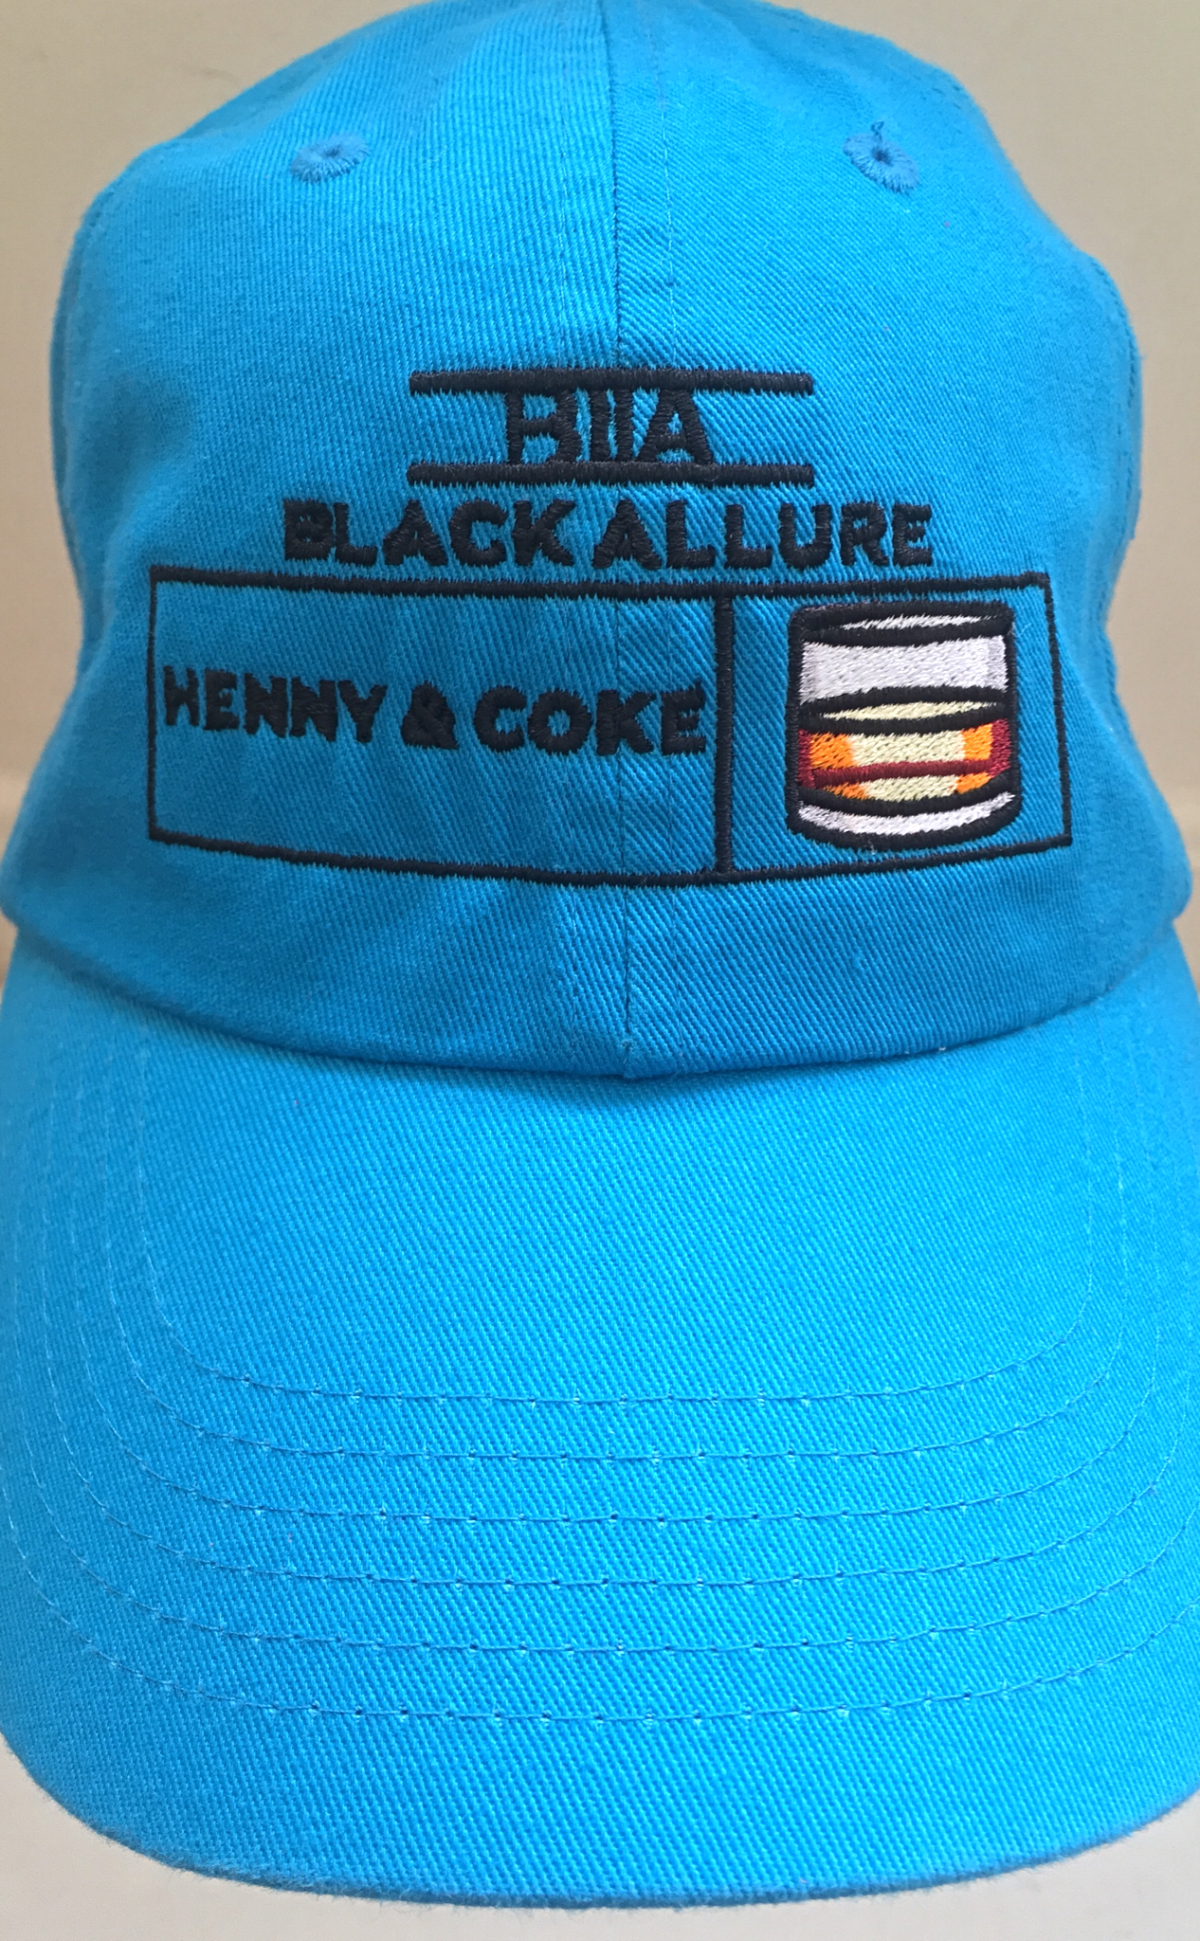 Henny & Coke Allure Hat Neon Blue
